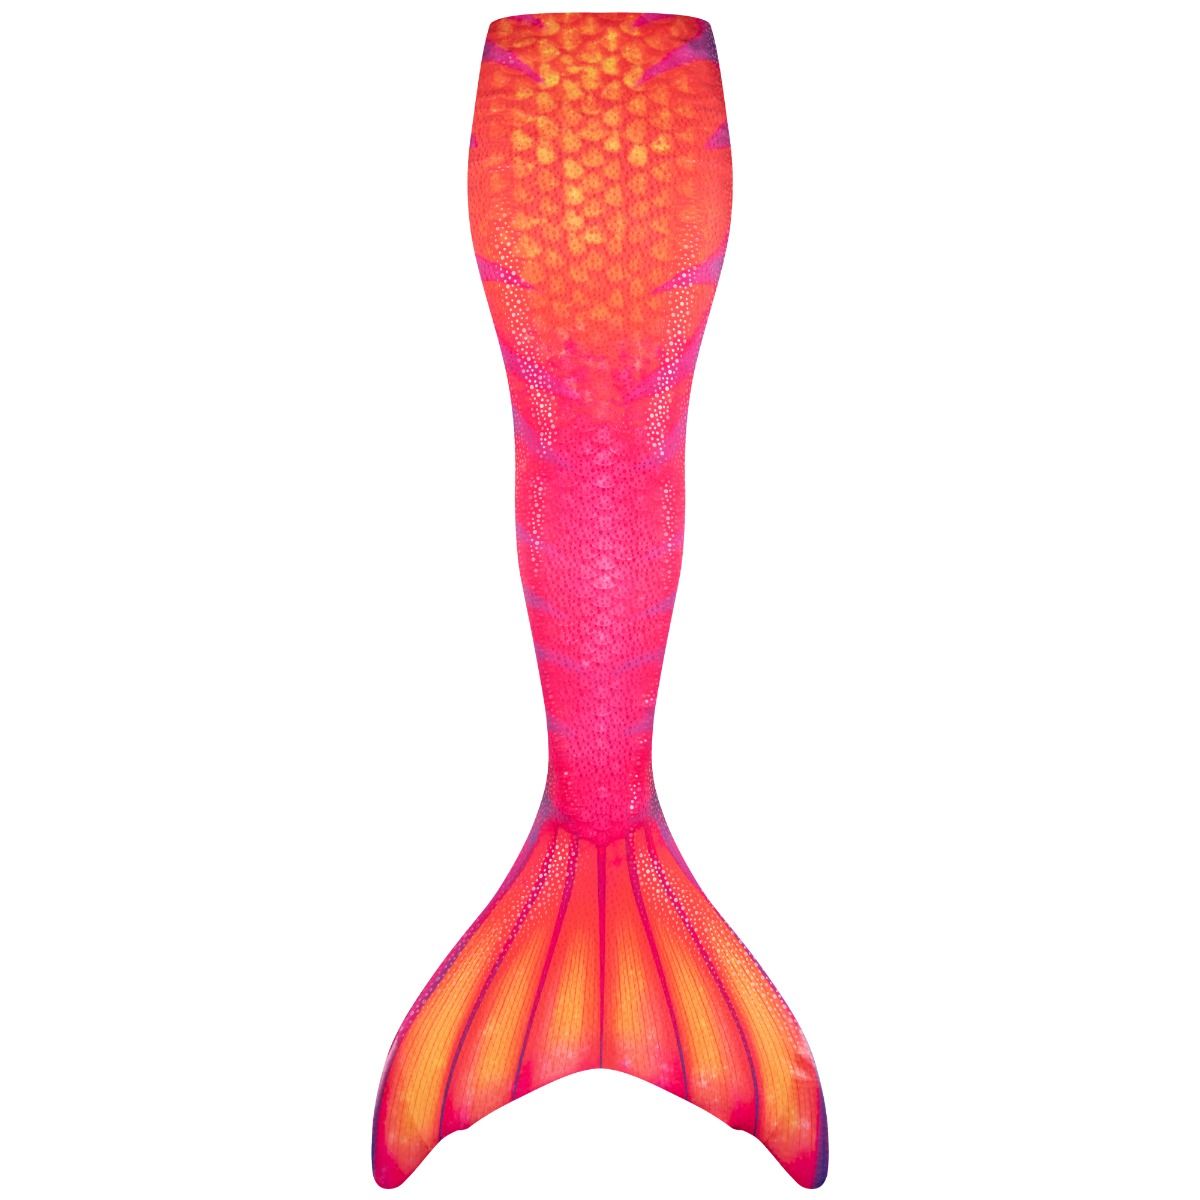 Retro Tails - Benutzerdefinierter Nachdruck von Meerjungfrauenschwänzen